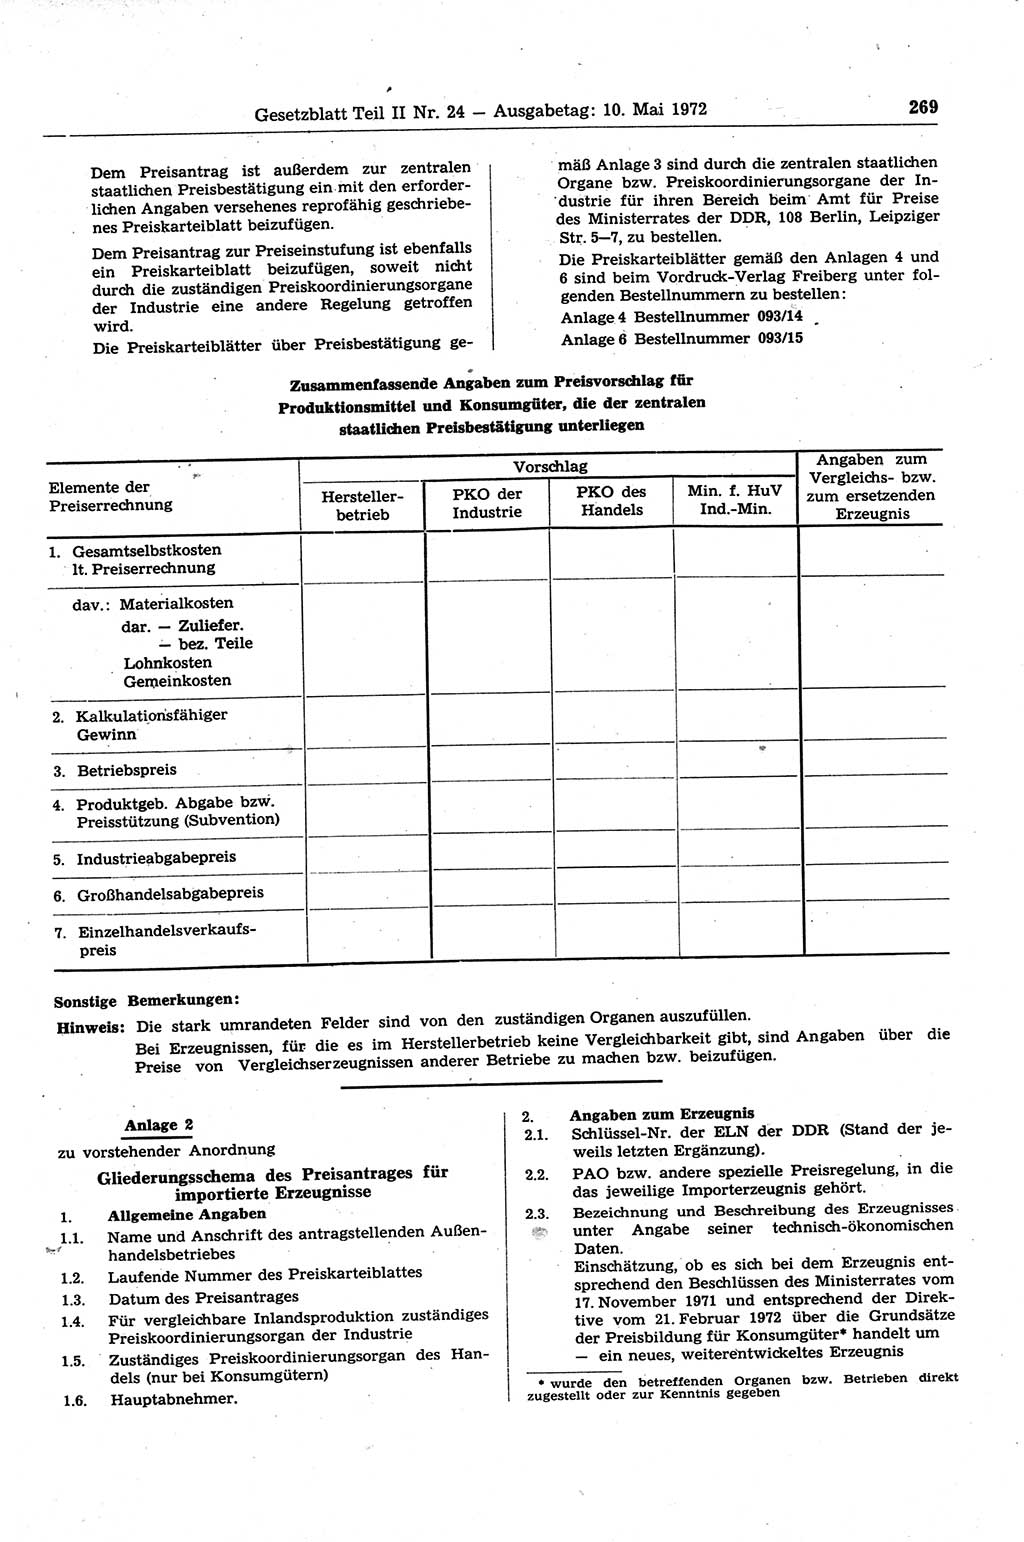 Gesetzblatt (GBl.) der Deutschen Demokratischen Republik (DDR) Teil ⅠⅠ 1972, Seite 269 (GBl. DDR ⅠⅠ 1972, S. 269)